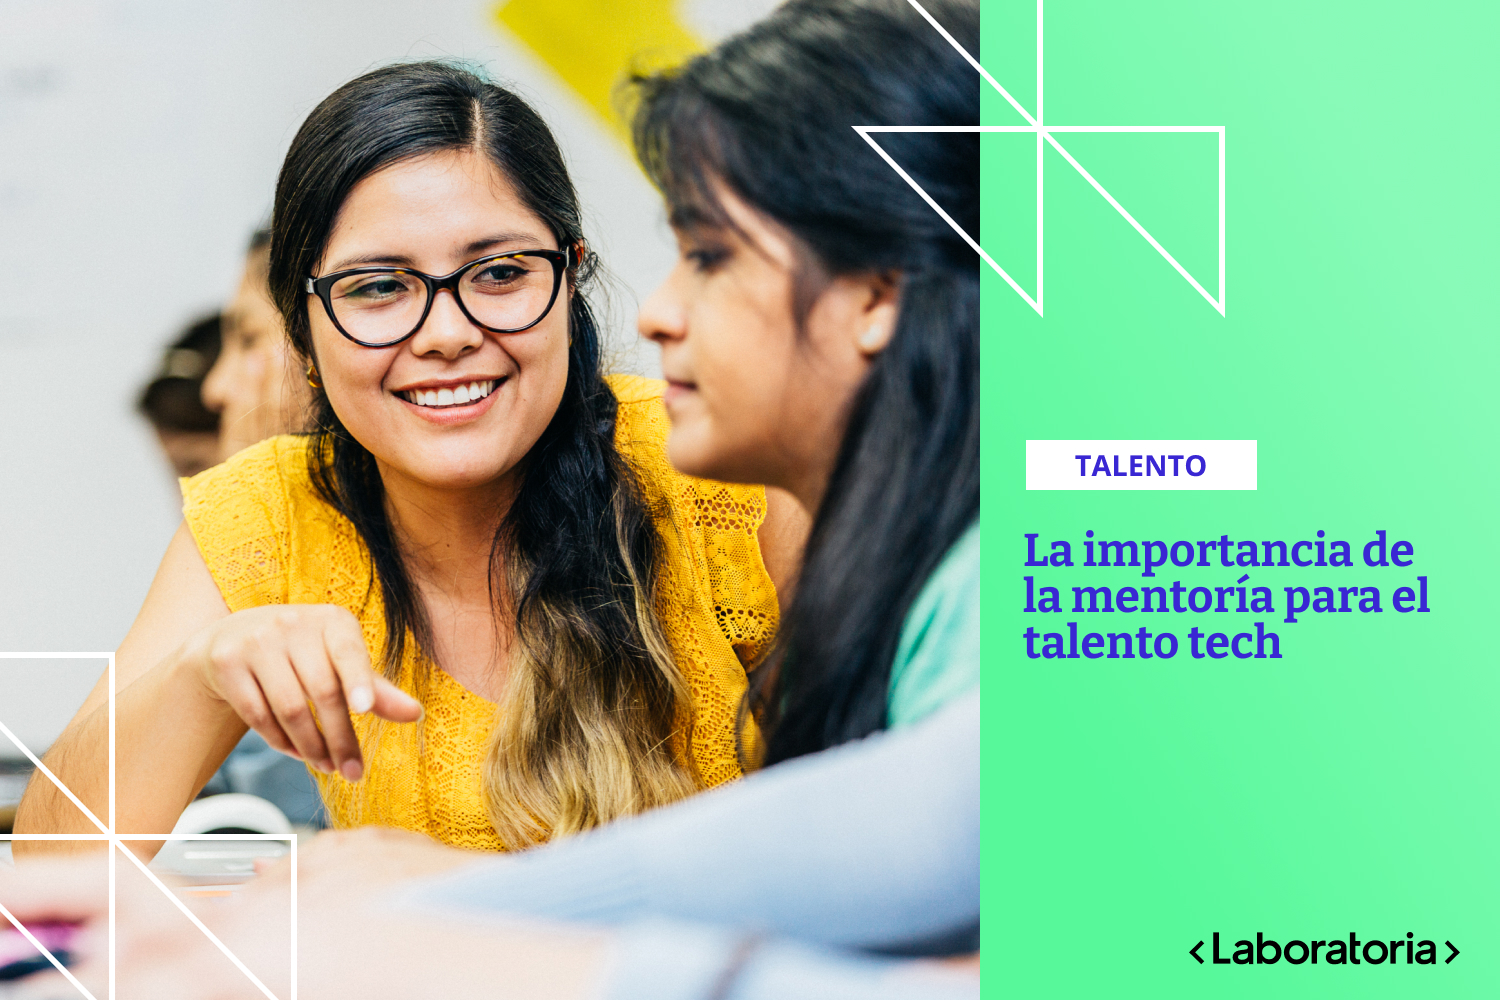 Conoce 5 razones concretas por las que es importante diseñar y promover formatos de mentoría para el talento en tecnología.